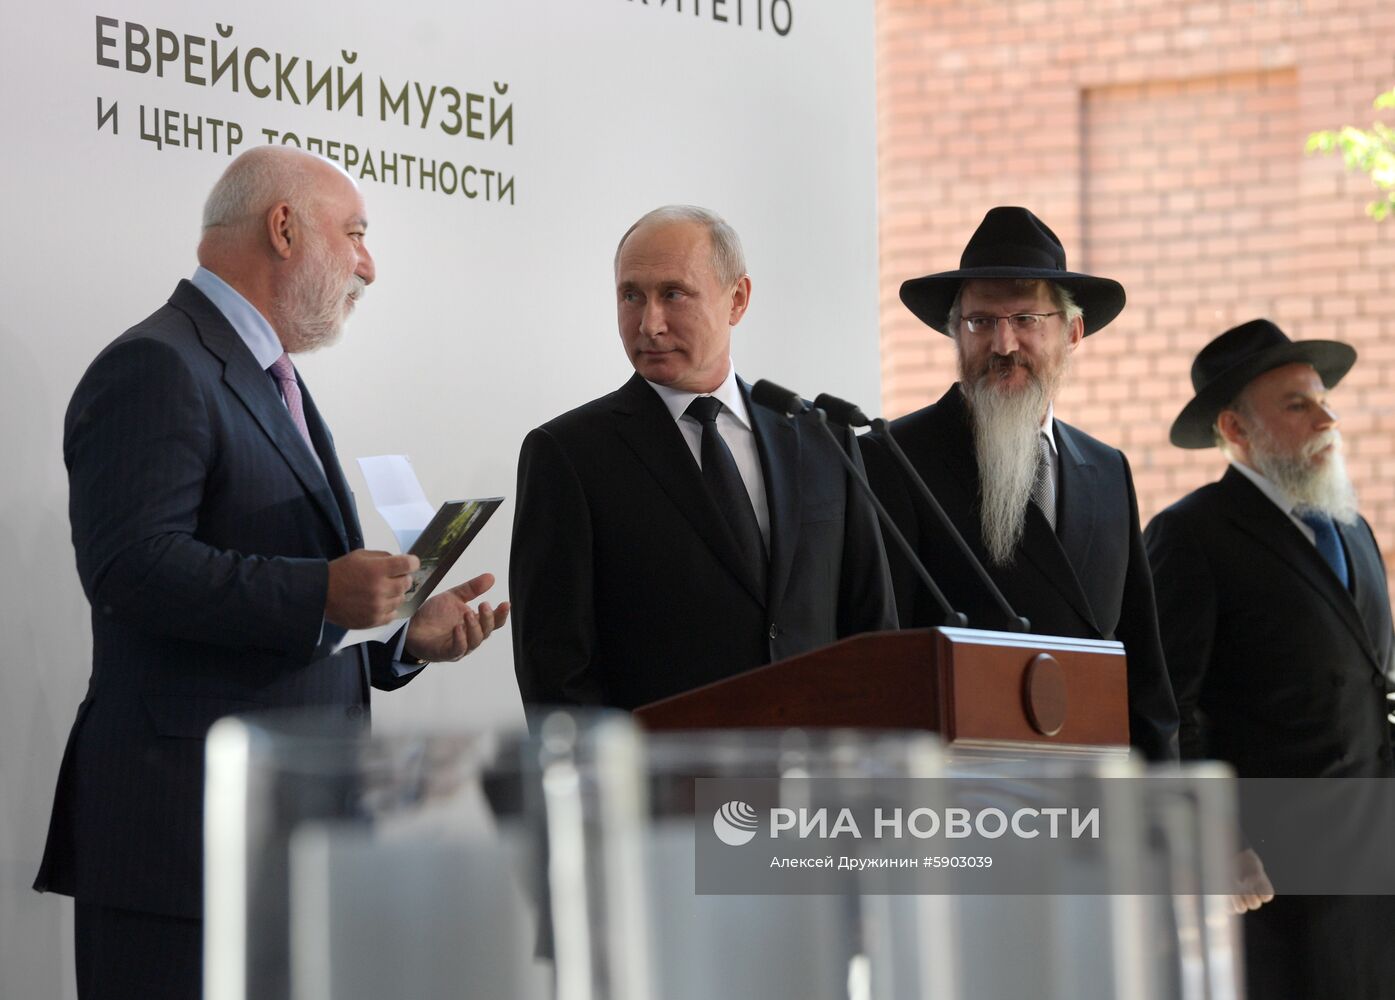 Президент РФ В. Путин посетил Еврейский музей и центр толерантности